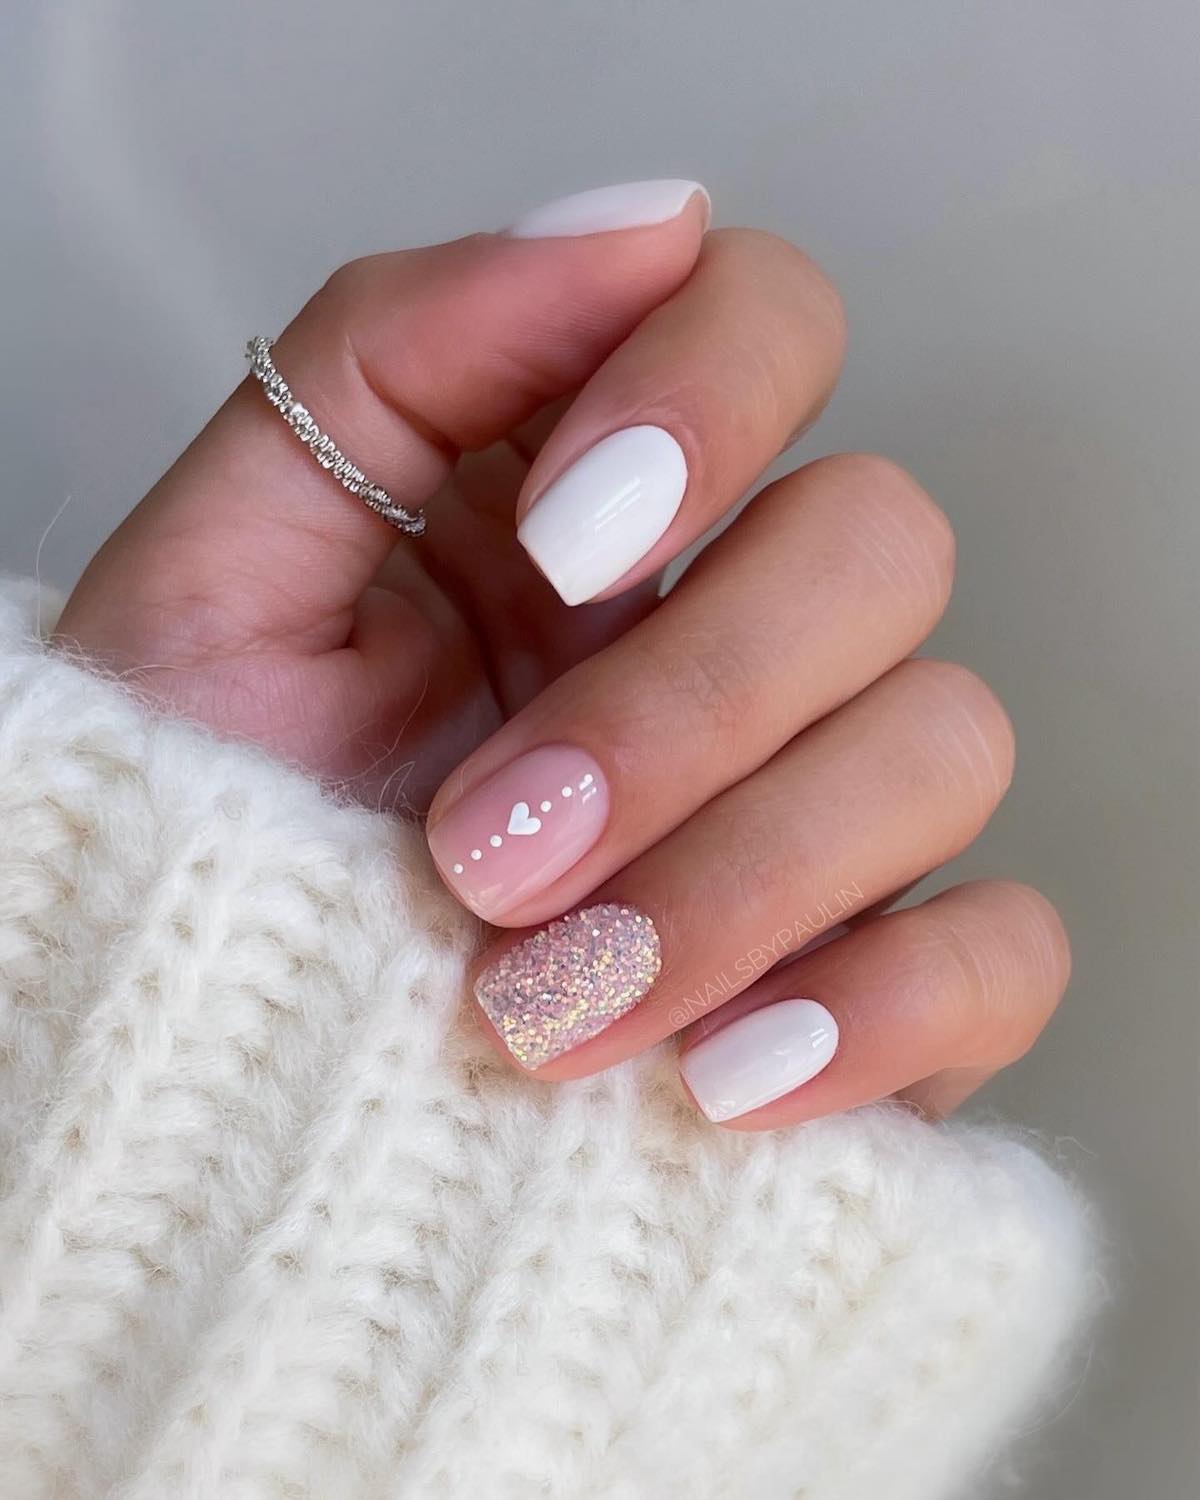 manicure unghie corte forma quadrata smalto bianco e rosa